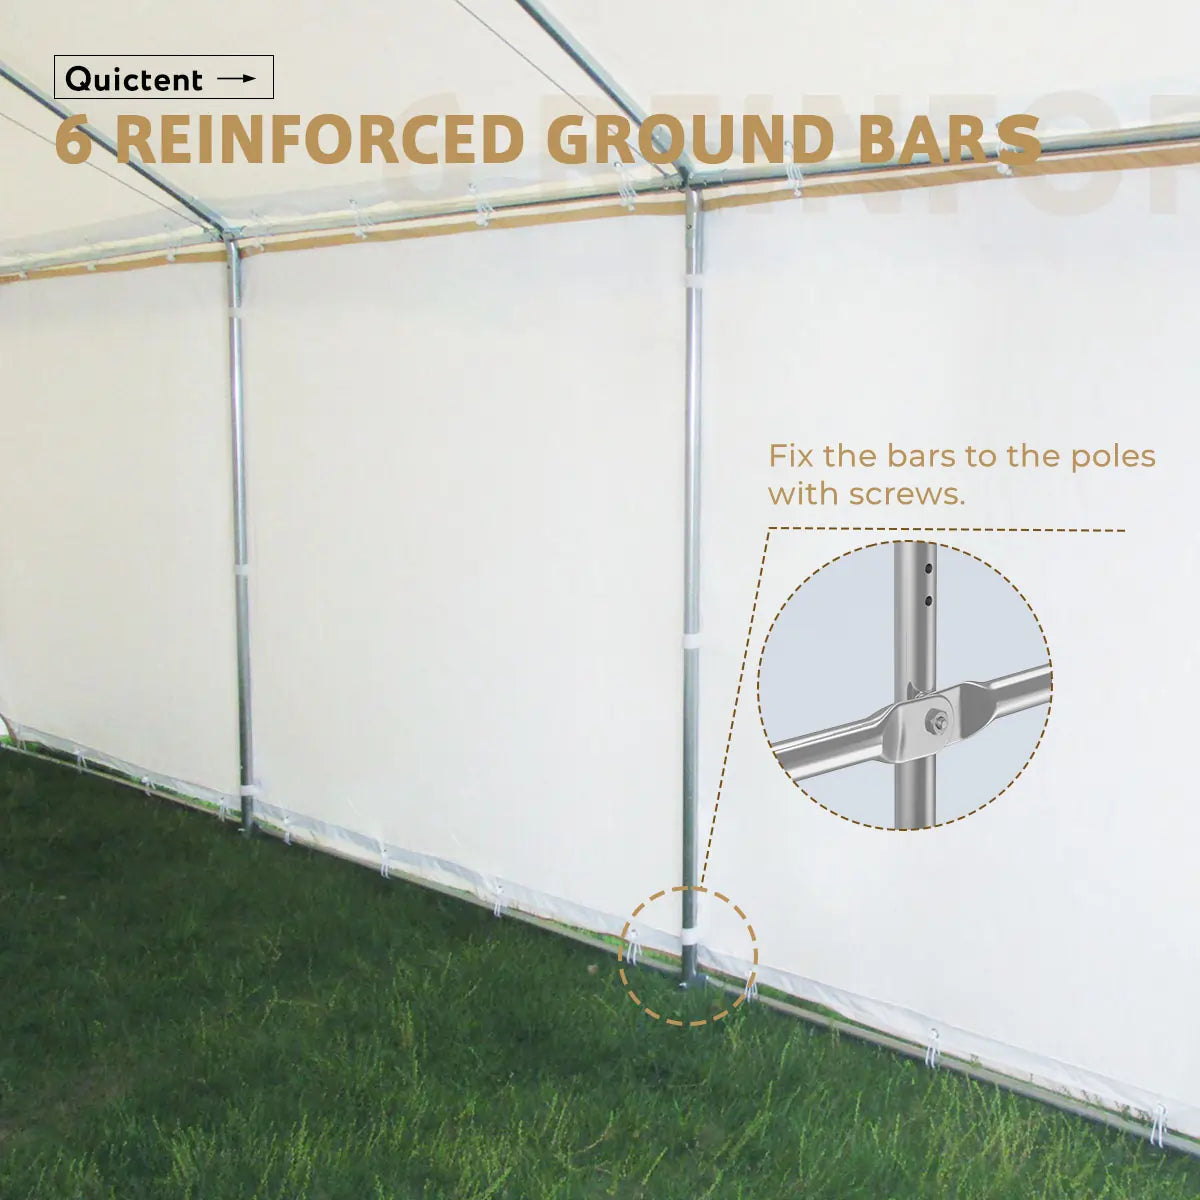 6 reinforced ground bars#color_beige